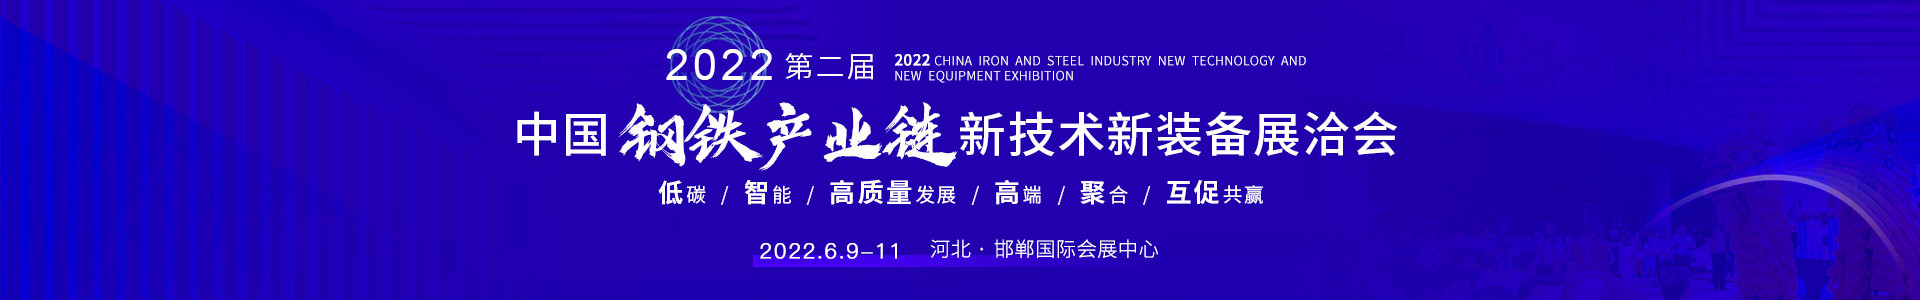 第二屆中國鋼鐵產業鏈新技術新裝備展洽會